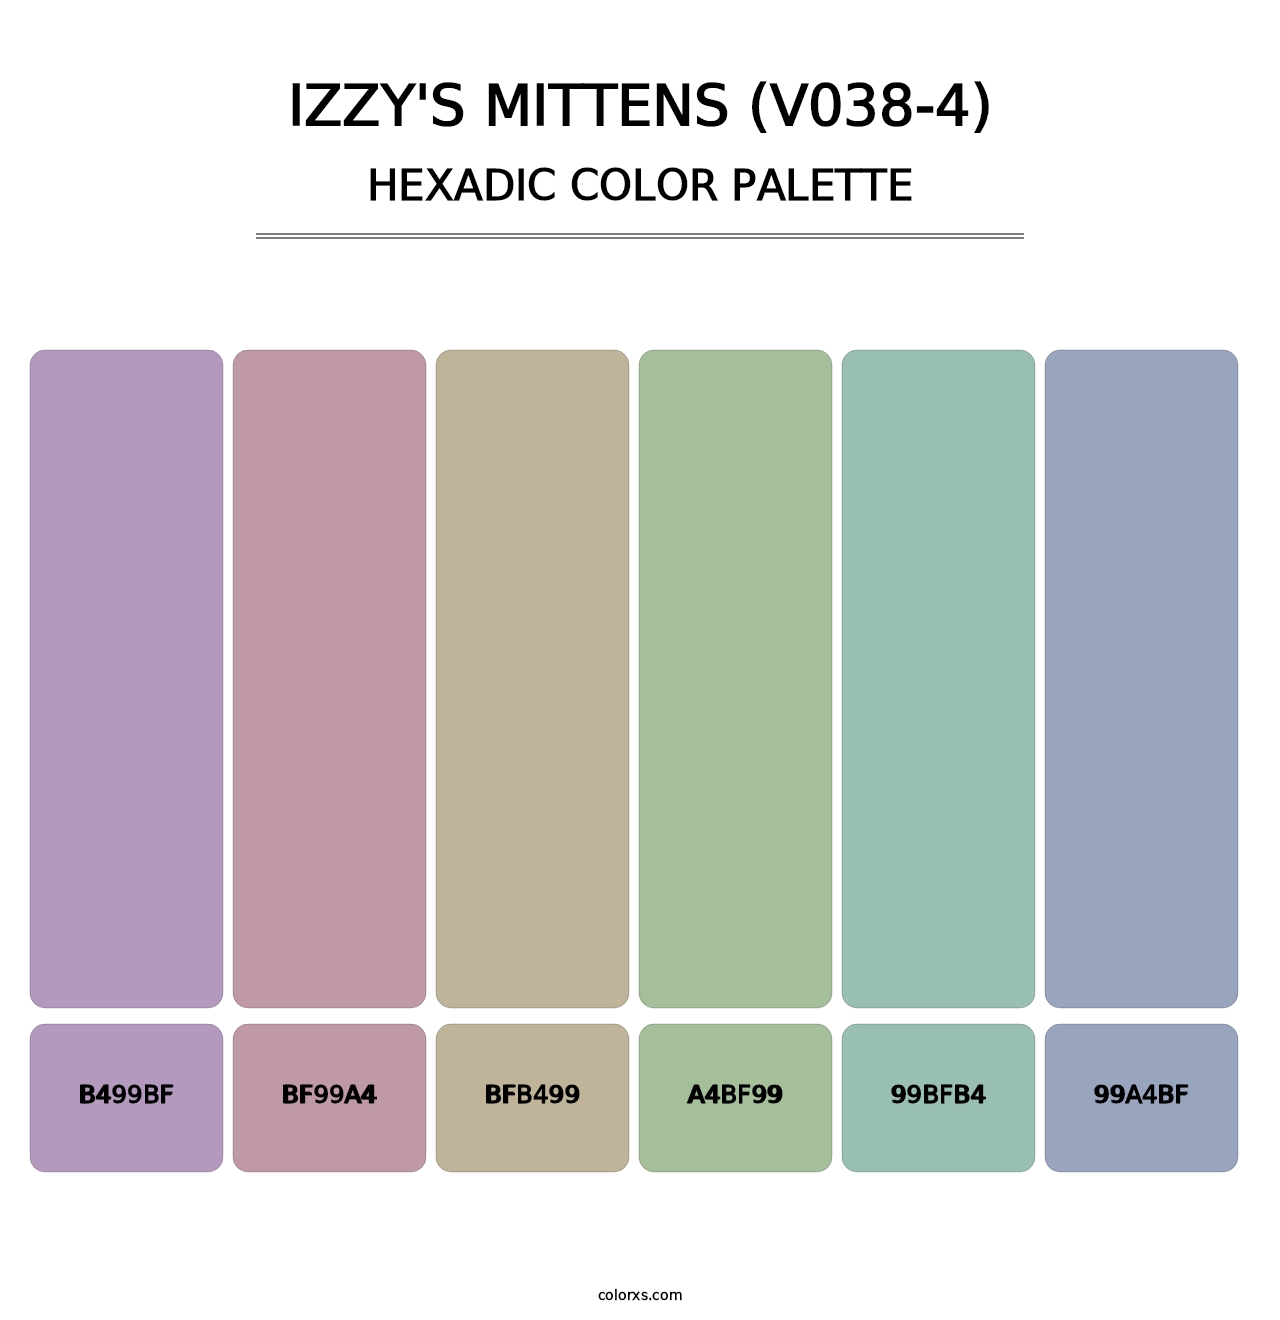 Izzy's Mittens (V038-4) - Hexadic Color Palette